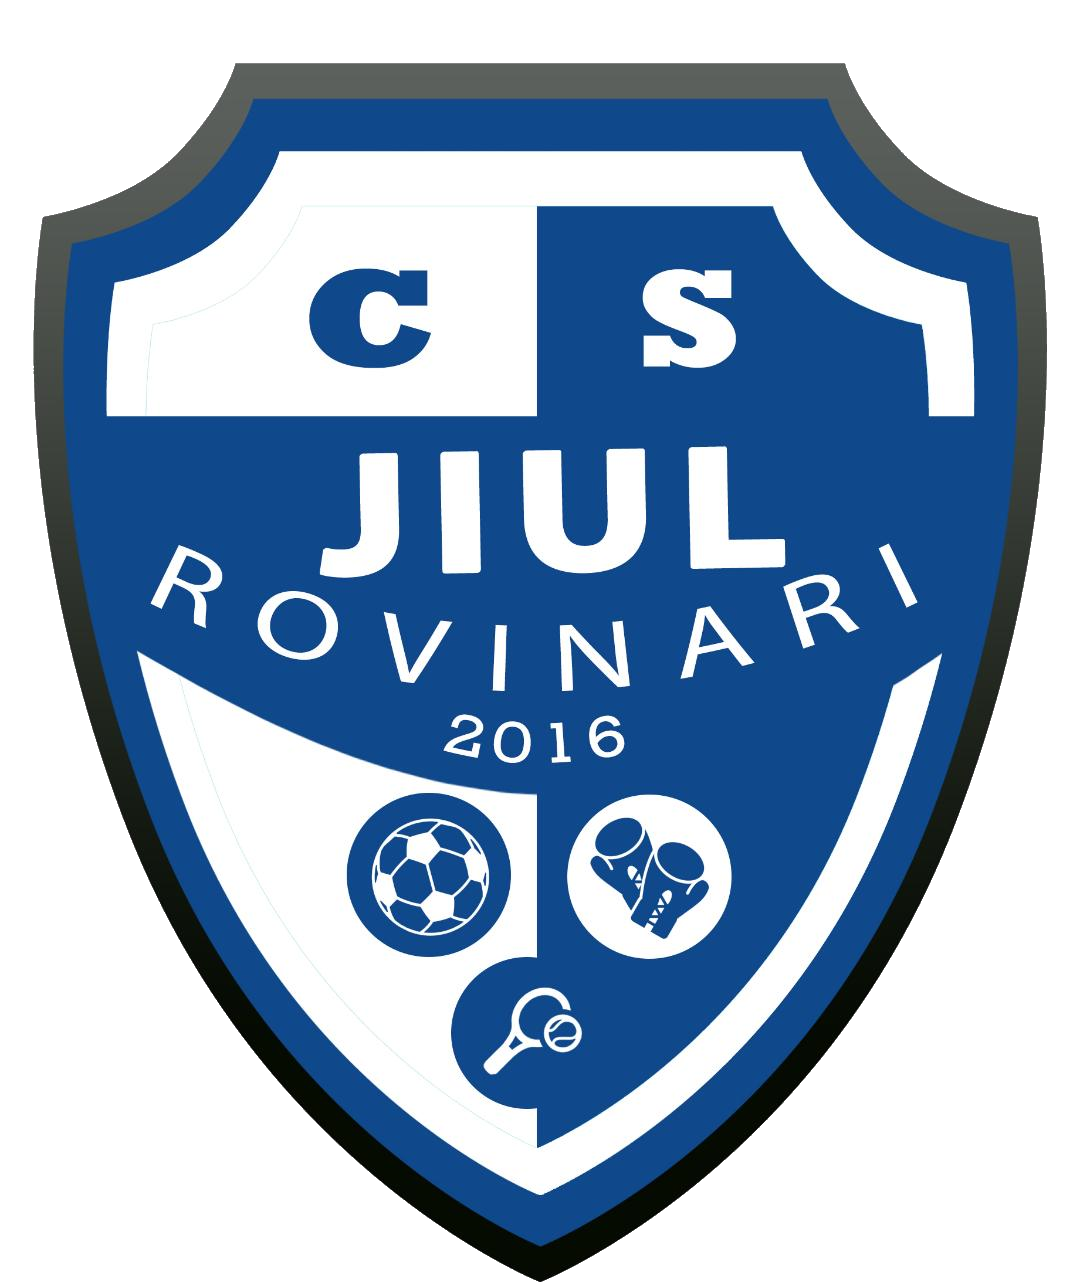 Wappen CS Jiul Rovinari 2016  129126